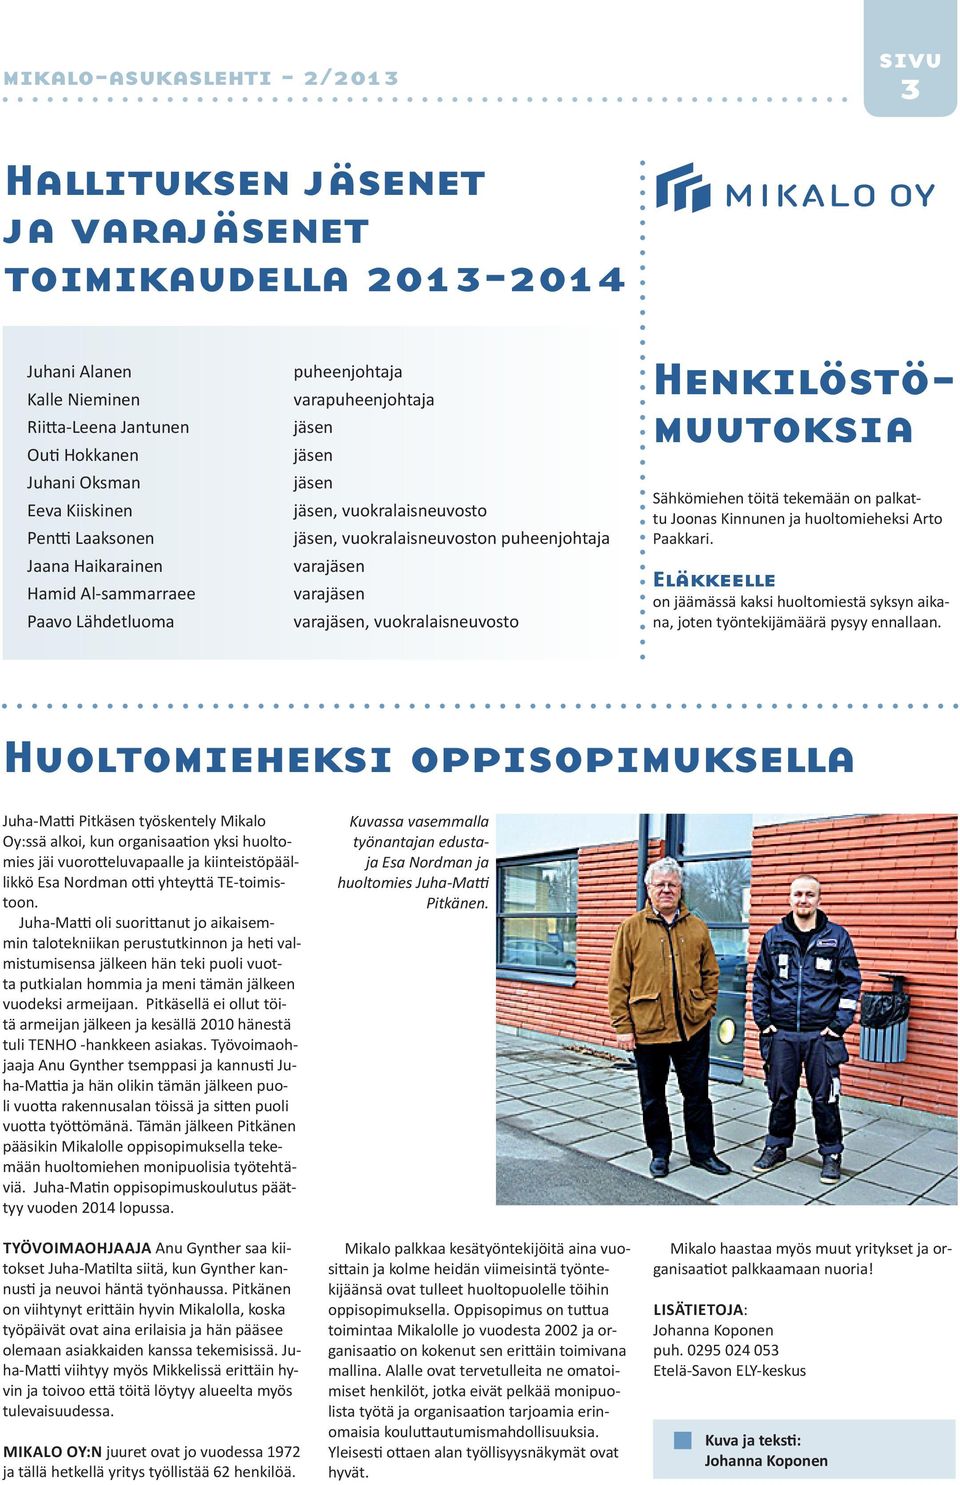 Henkilöstömuutoksia Sähkömiehen töitä tekemään on palkattu Joonas Kinnunen ja huoltomieheksi Arto Paakkari.